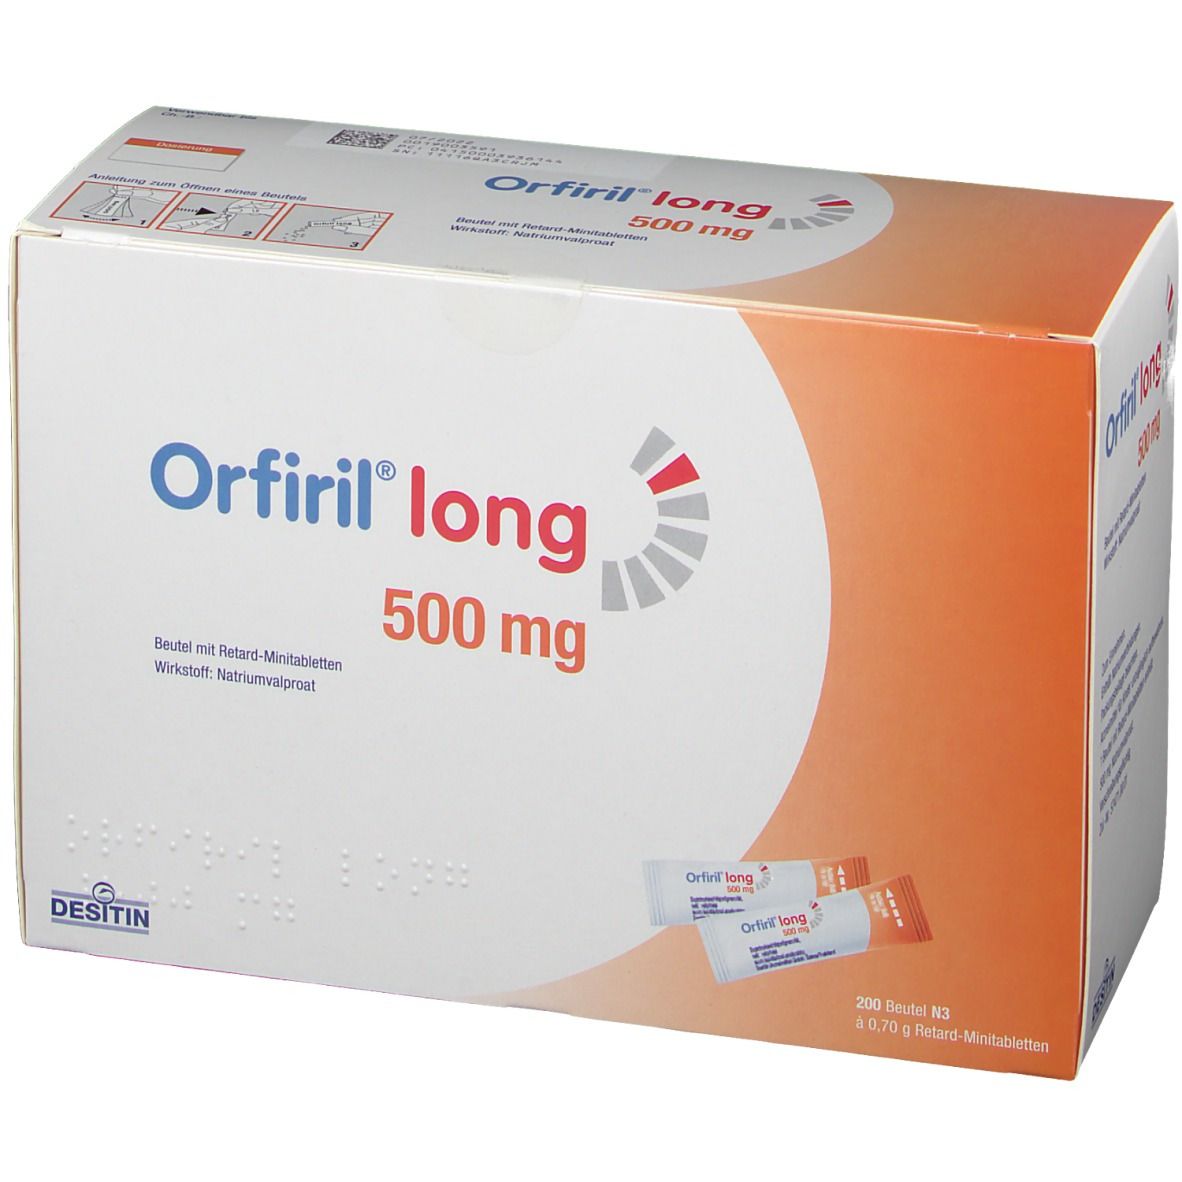 Orfiril® long 500 mg